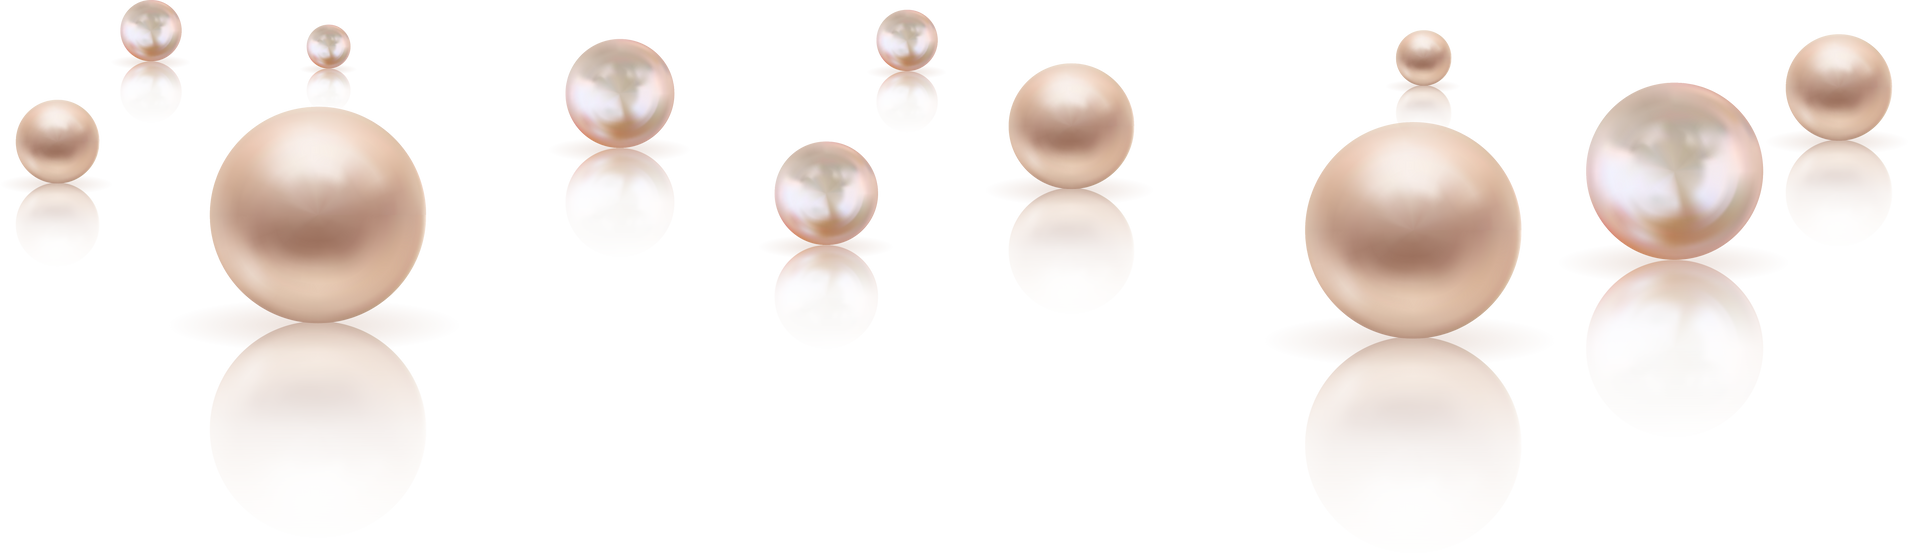 Luxury Pearls Illustration